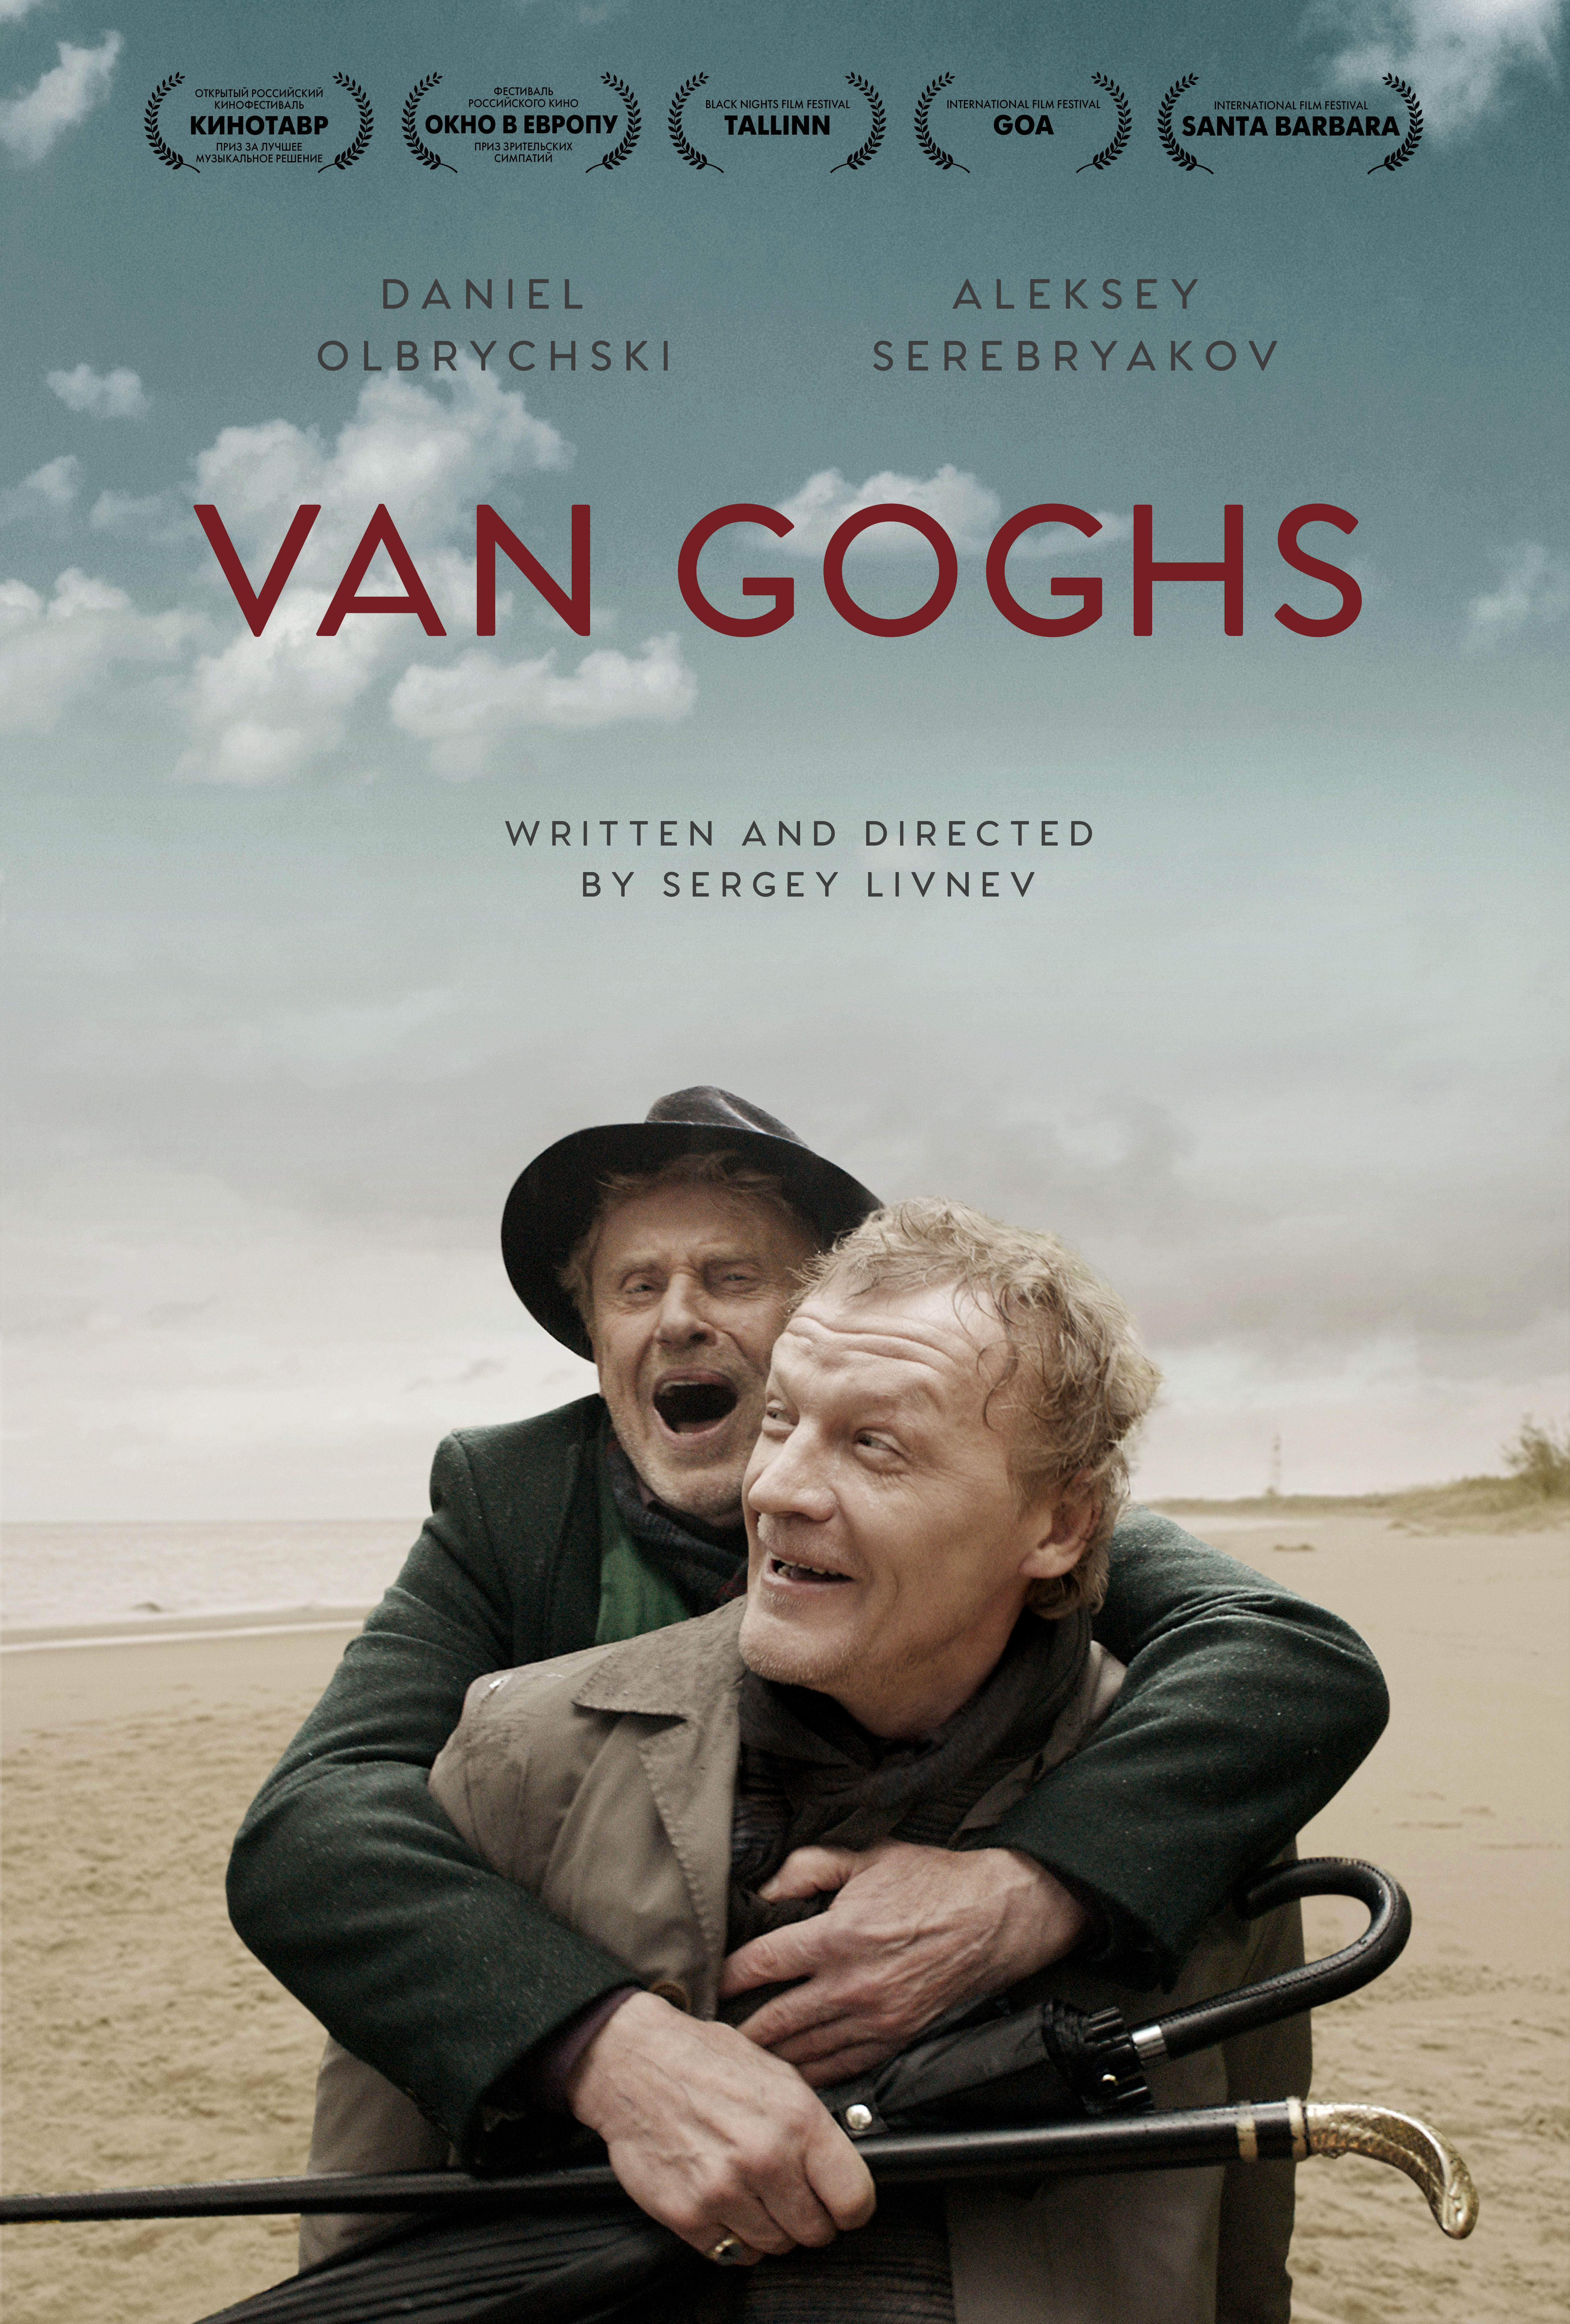 Van Goghs Main Poster